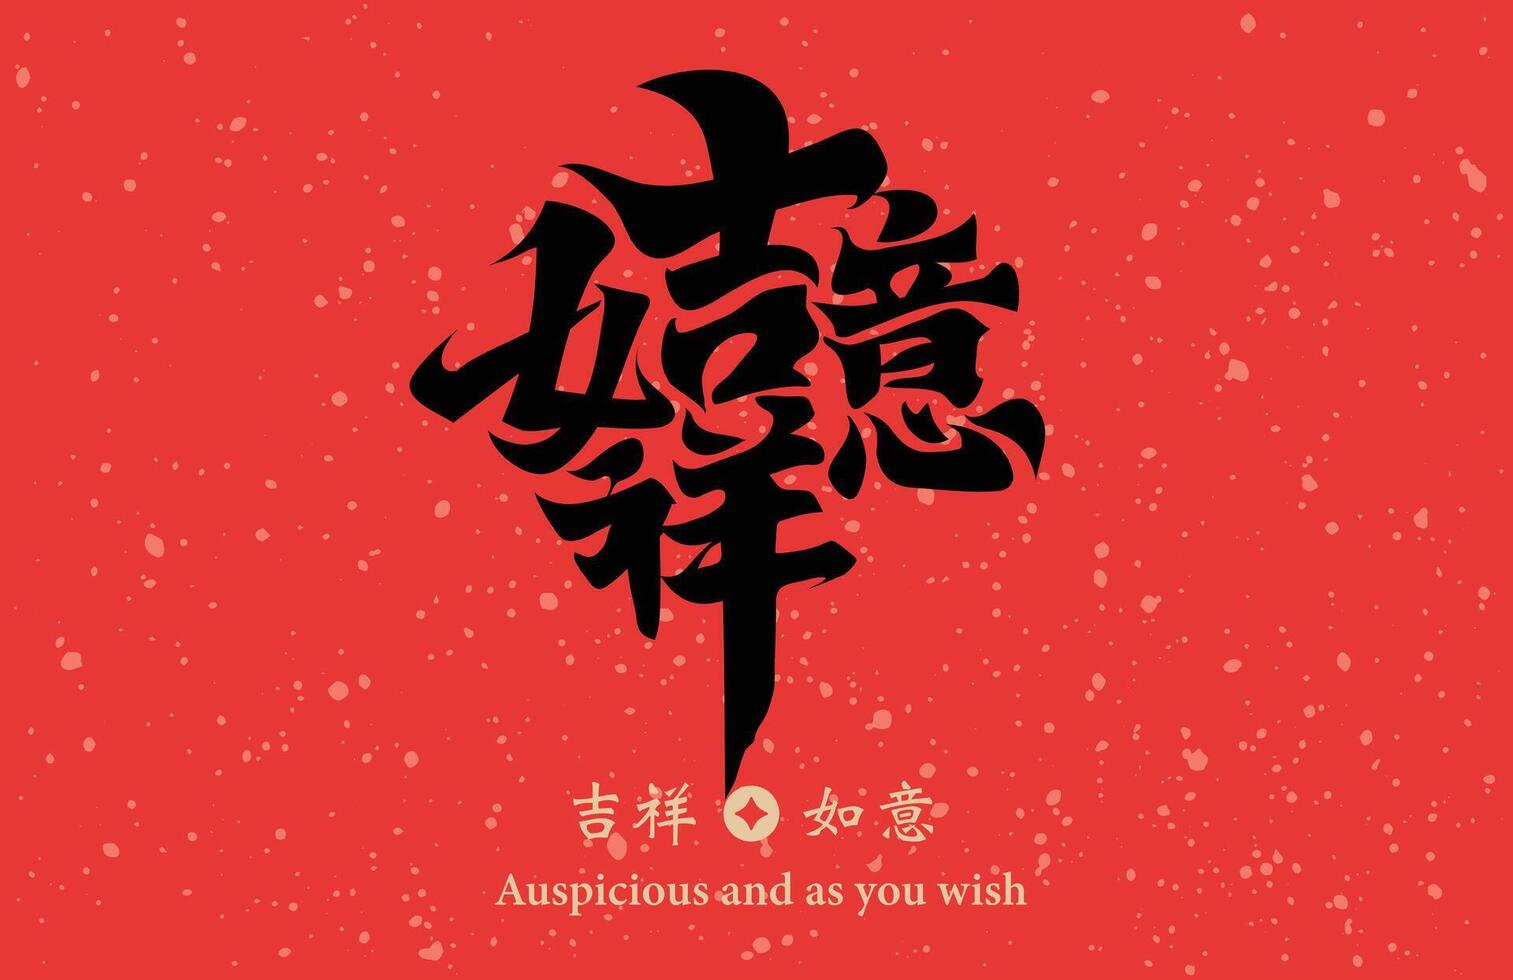 chinois calligraphie combinaison mot, sens de bon augure et comme vous souhait , pouvez être utilisé pour chinois Nouveau année décorations, matériaux pour printemps Festival distiques. vecteur